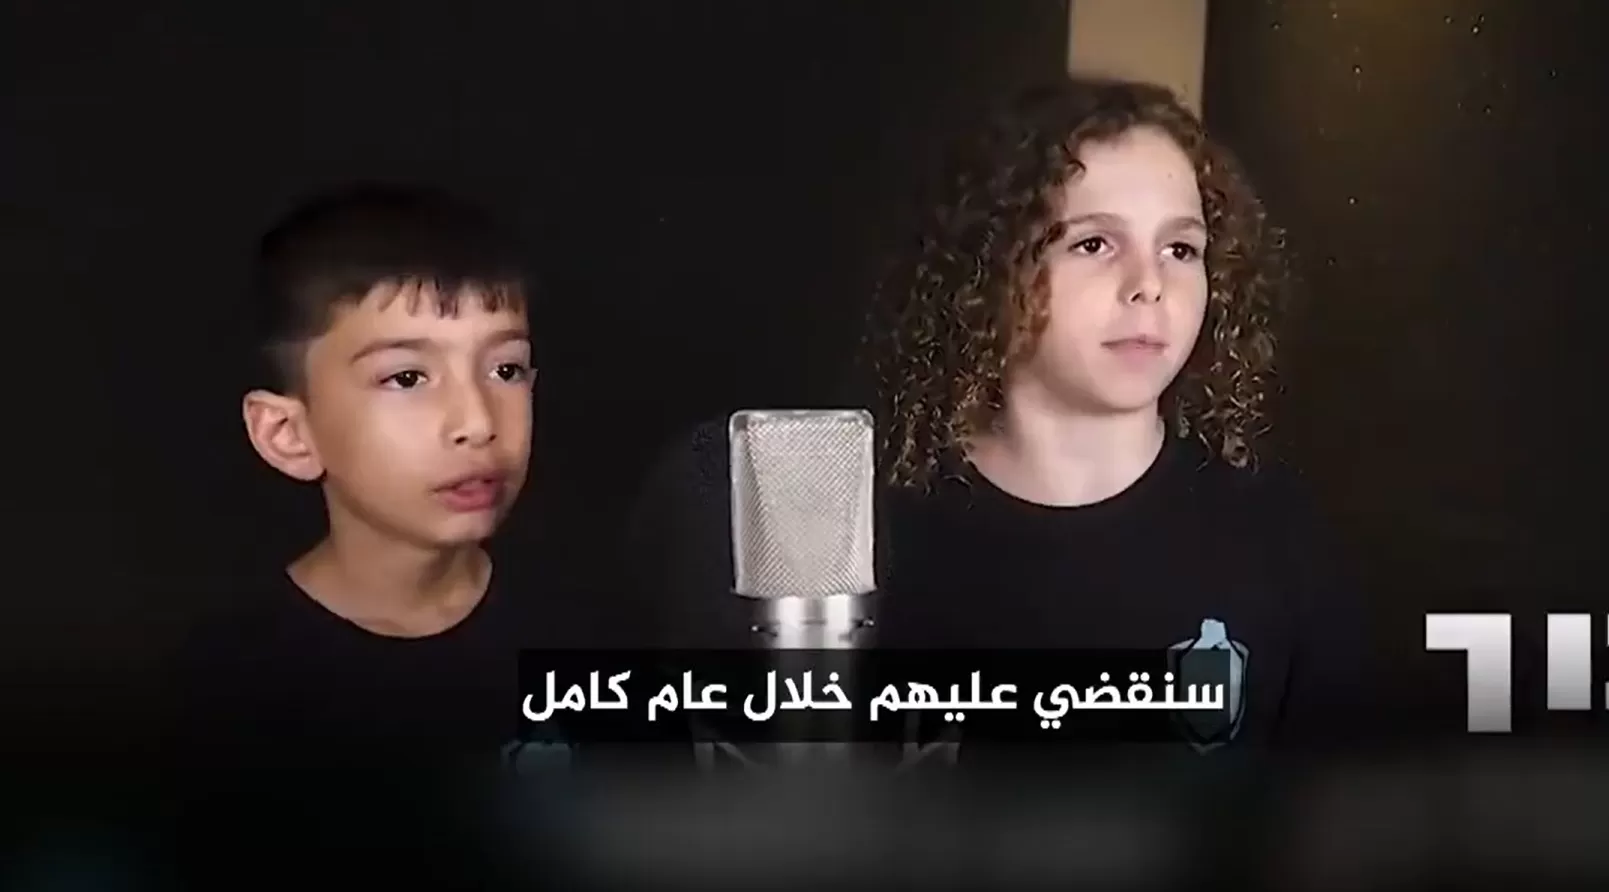 أغنية لأطفال إسرائيليين تدعو لقتل كل من في غزة